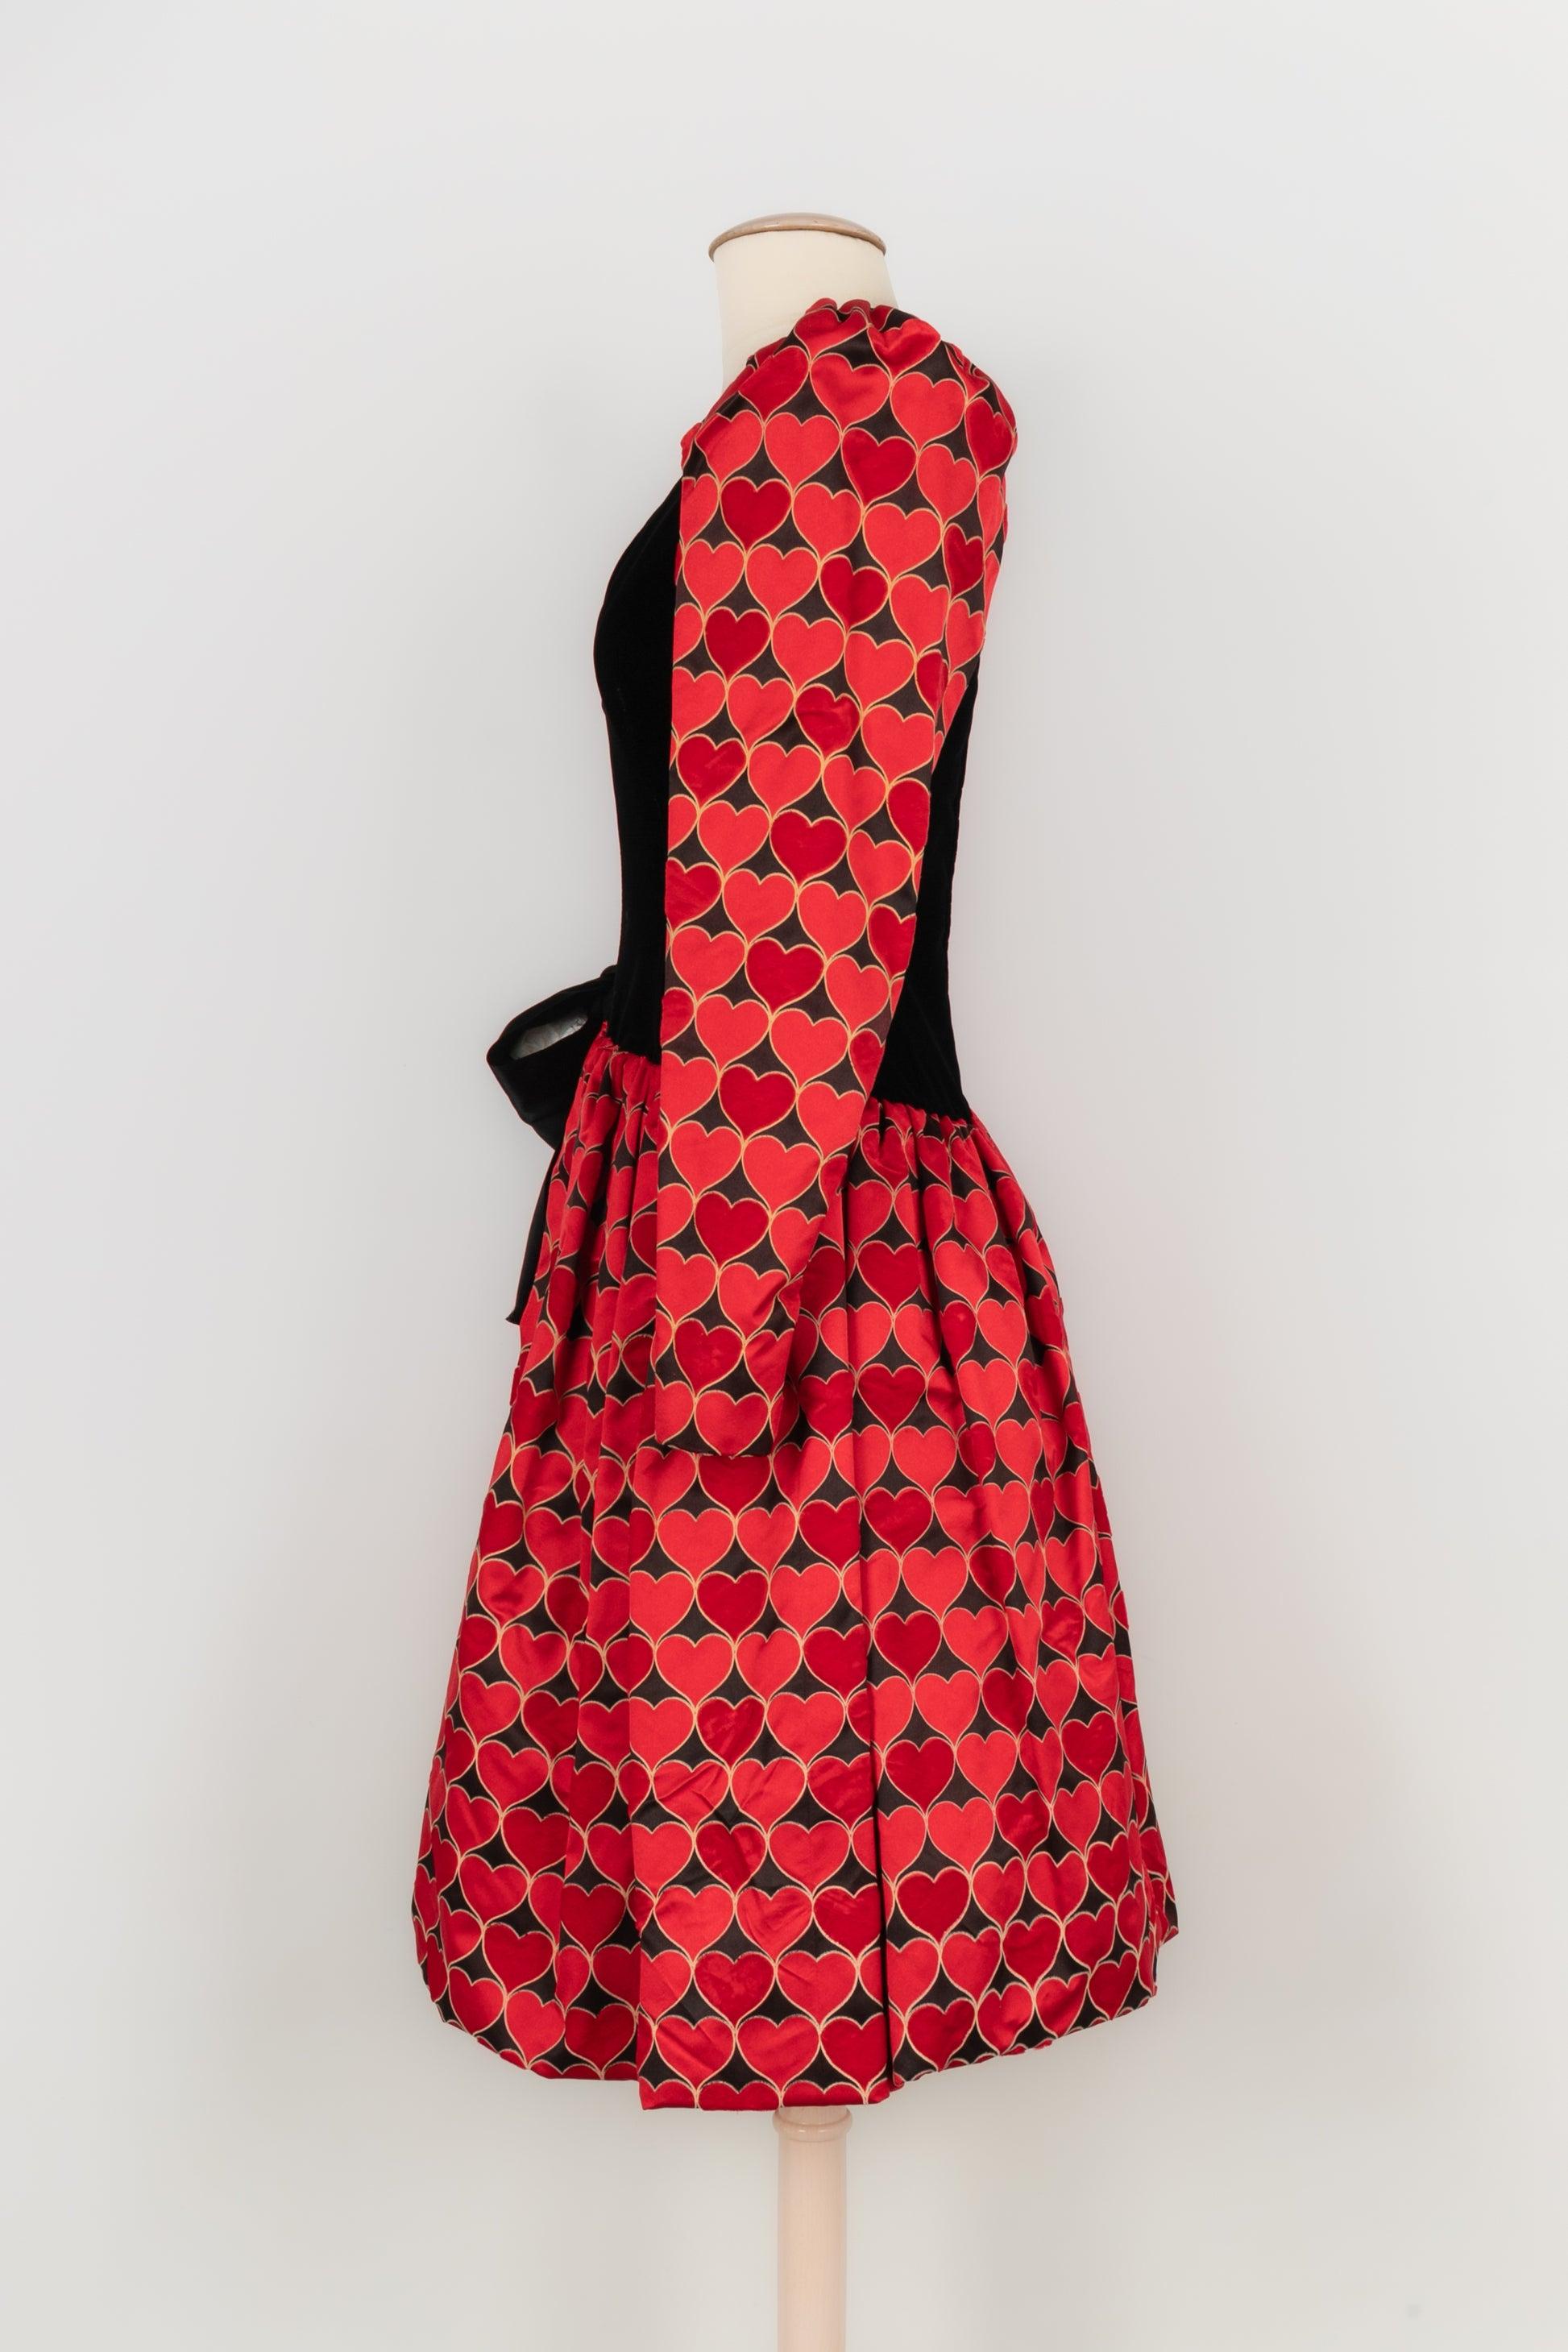 Givenchy - (Made in France) Schwarzes Haute Couture Kleid aus Satin und Samt, verziert mit roten Herzen und einer großen schwarzen Satinschleife. Kein Größen- oder Zusammensetzungsetikett, es passt einer 34FR/36FR. Ein Stück aus den 1980er